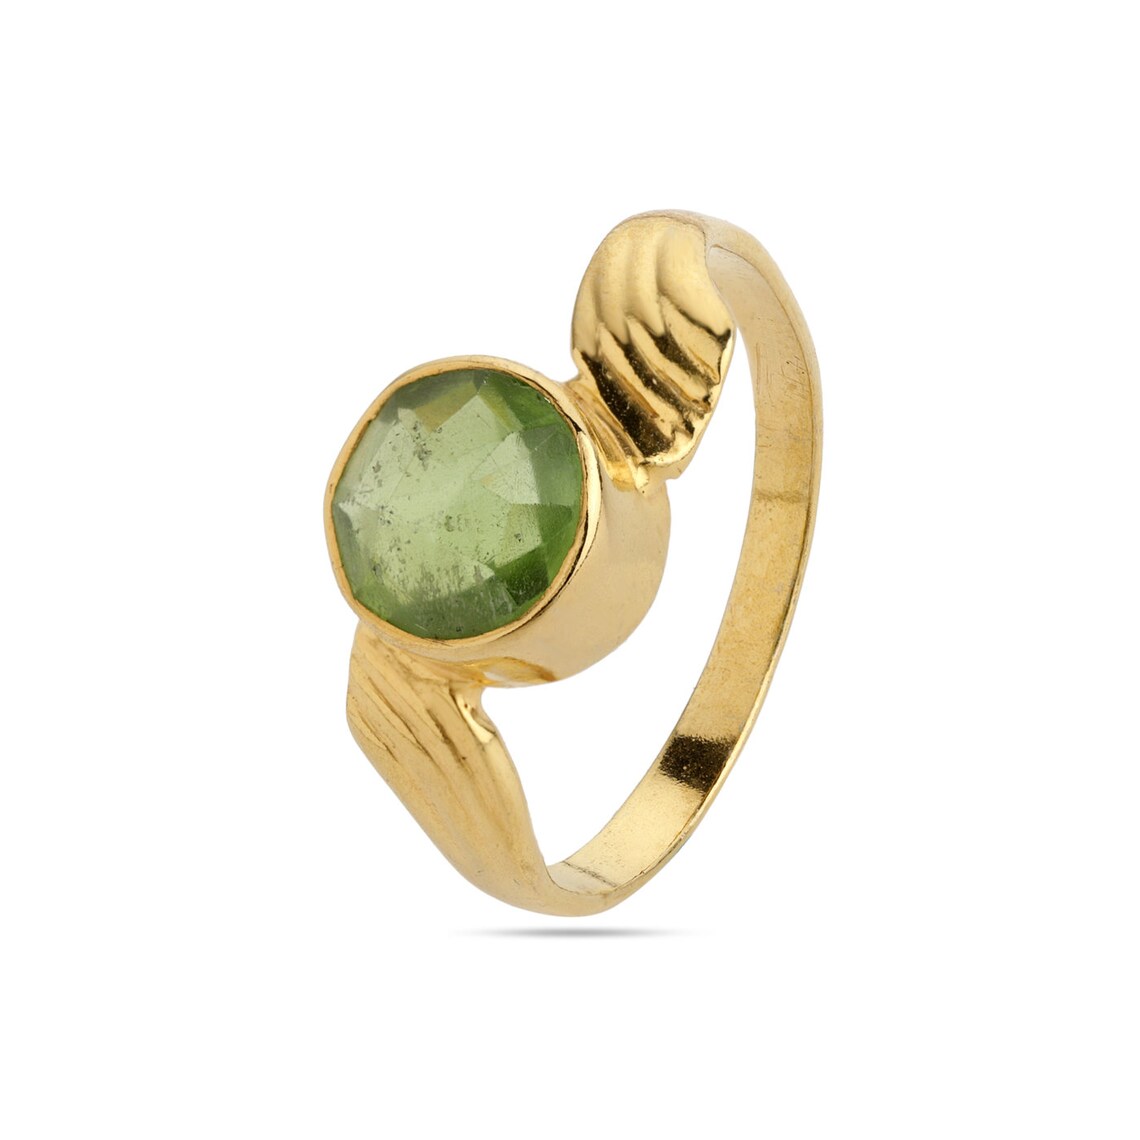 Natural Peridot Gemstone Ring, 925 Silver Ring, Green Color Ring, Gold Ring Jewelry, Peridot Jewelry, Faceted Round Peridot Ring